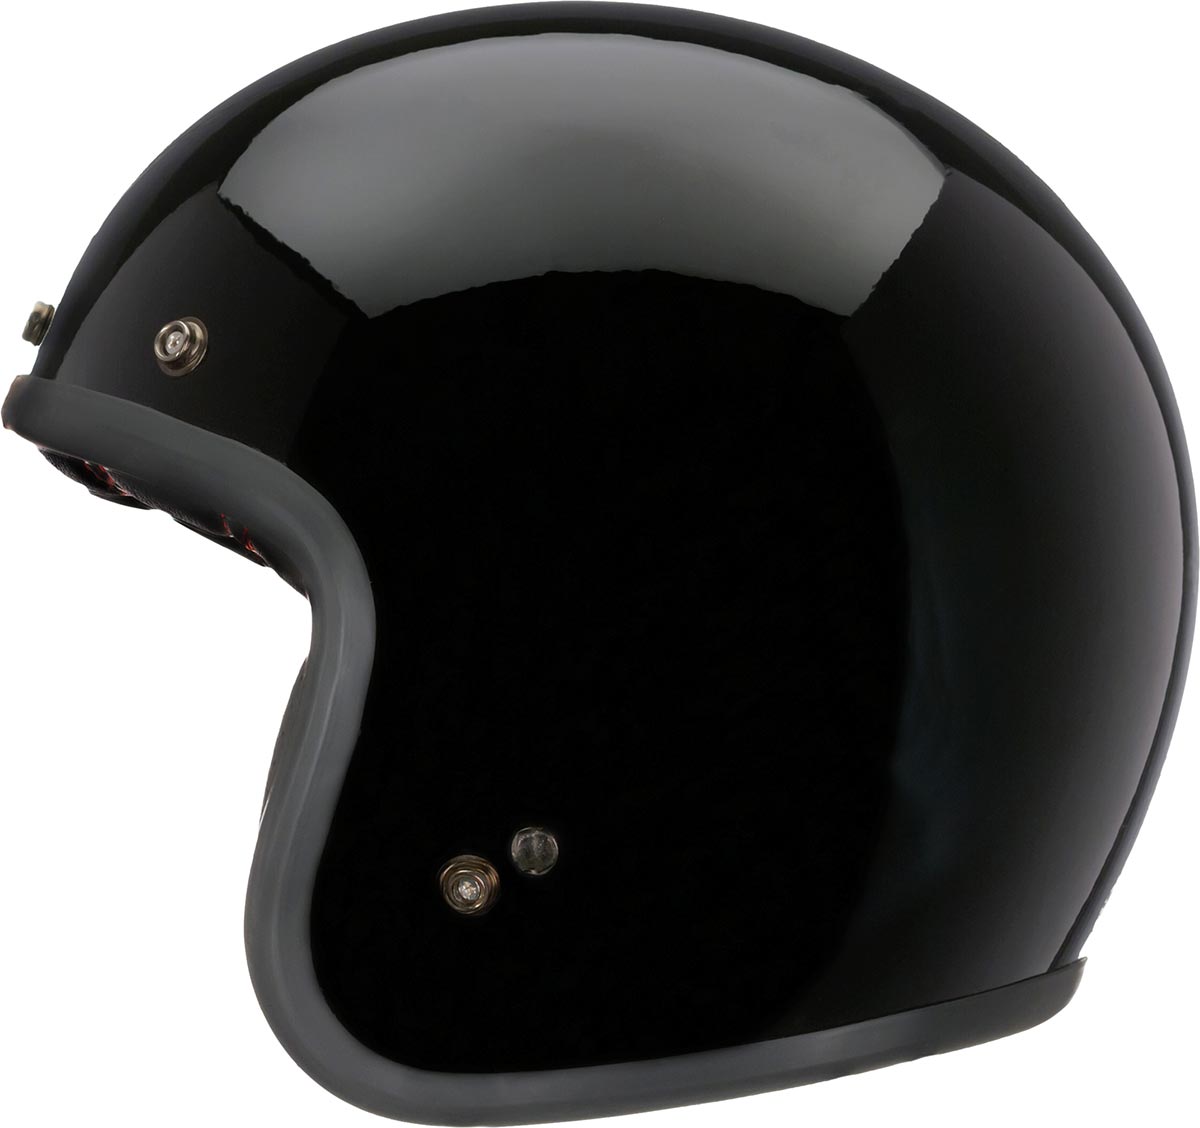 Bell Custom 500 Solid Black Open Face Helmet